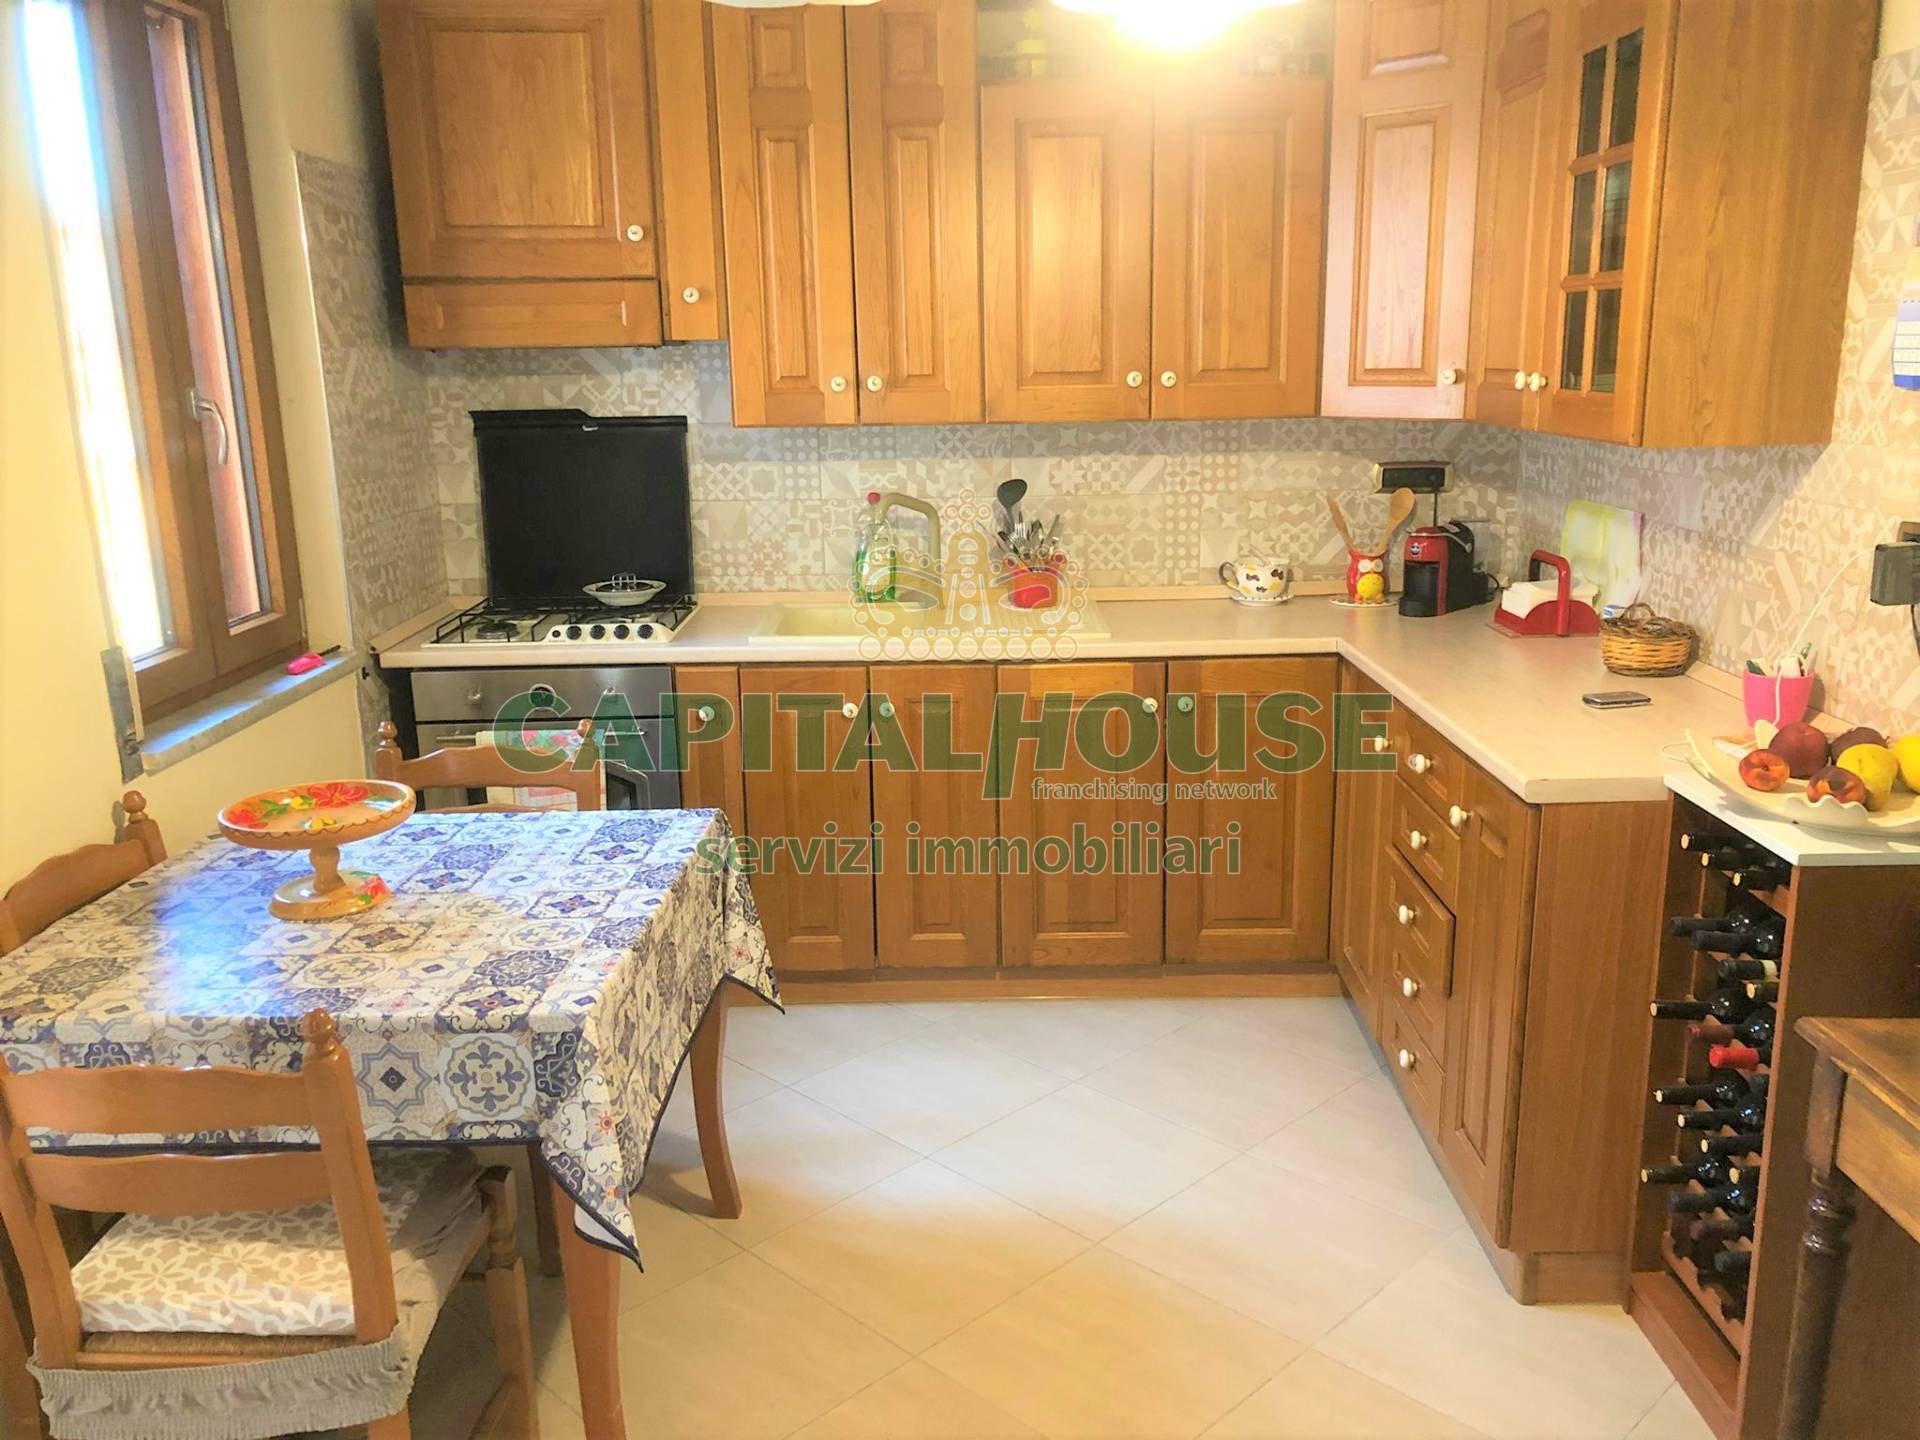 Appartamento in vendita a Montefalcione, 4 locali, prezzo € 72.000 | CambioCasa.it